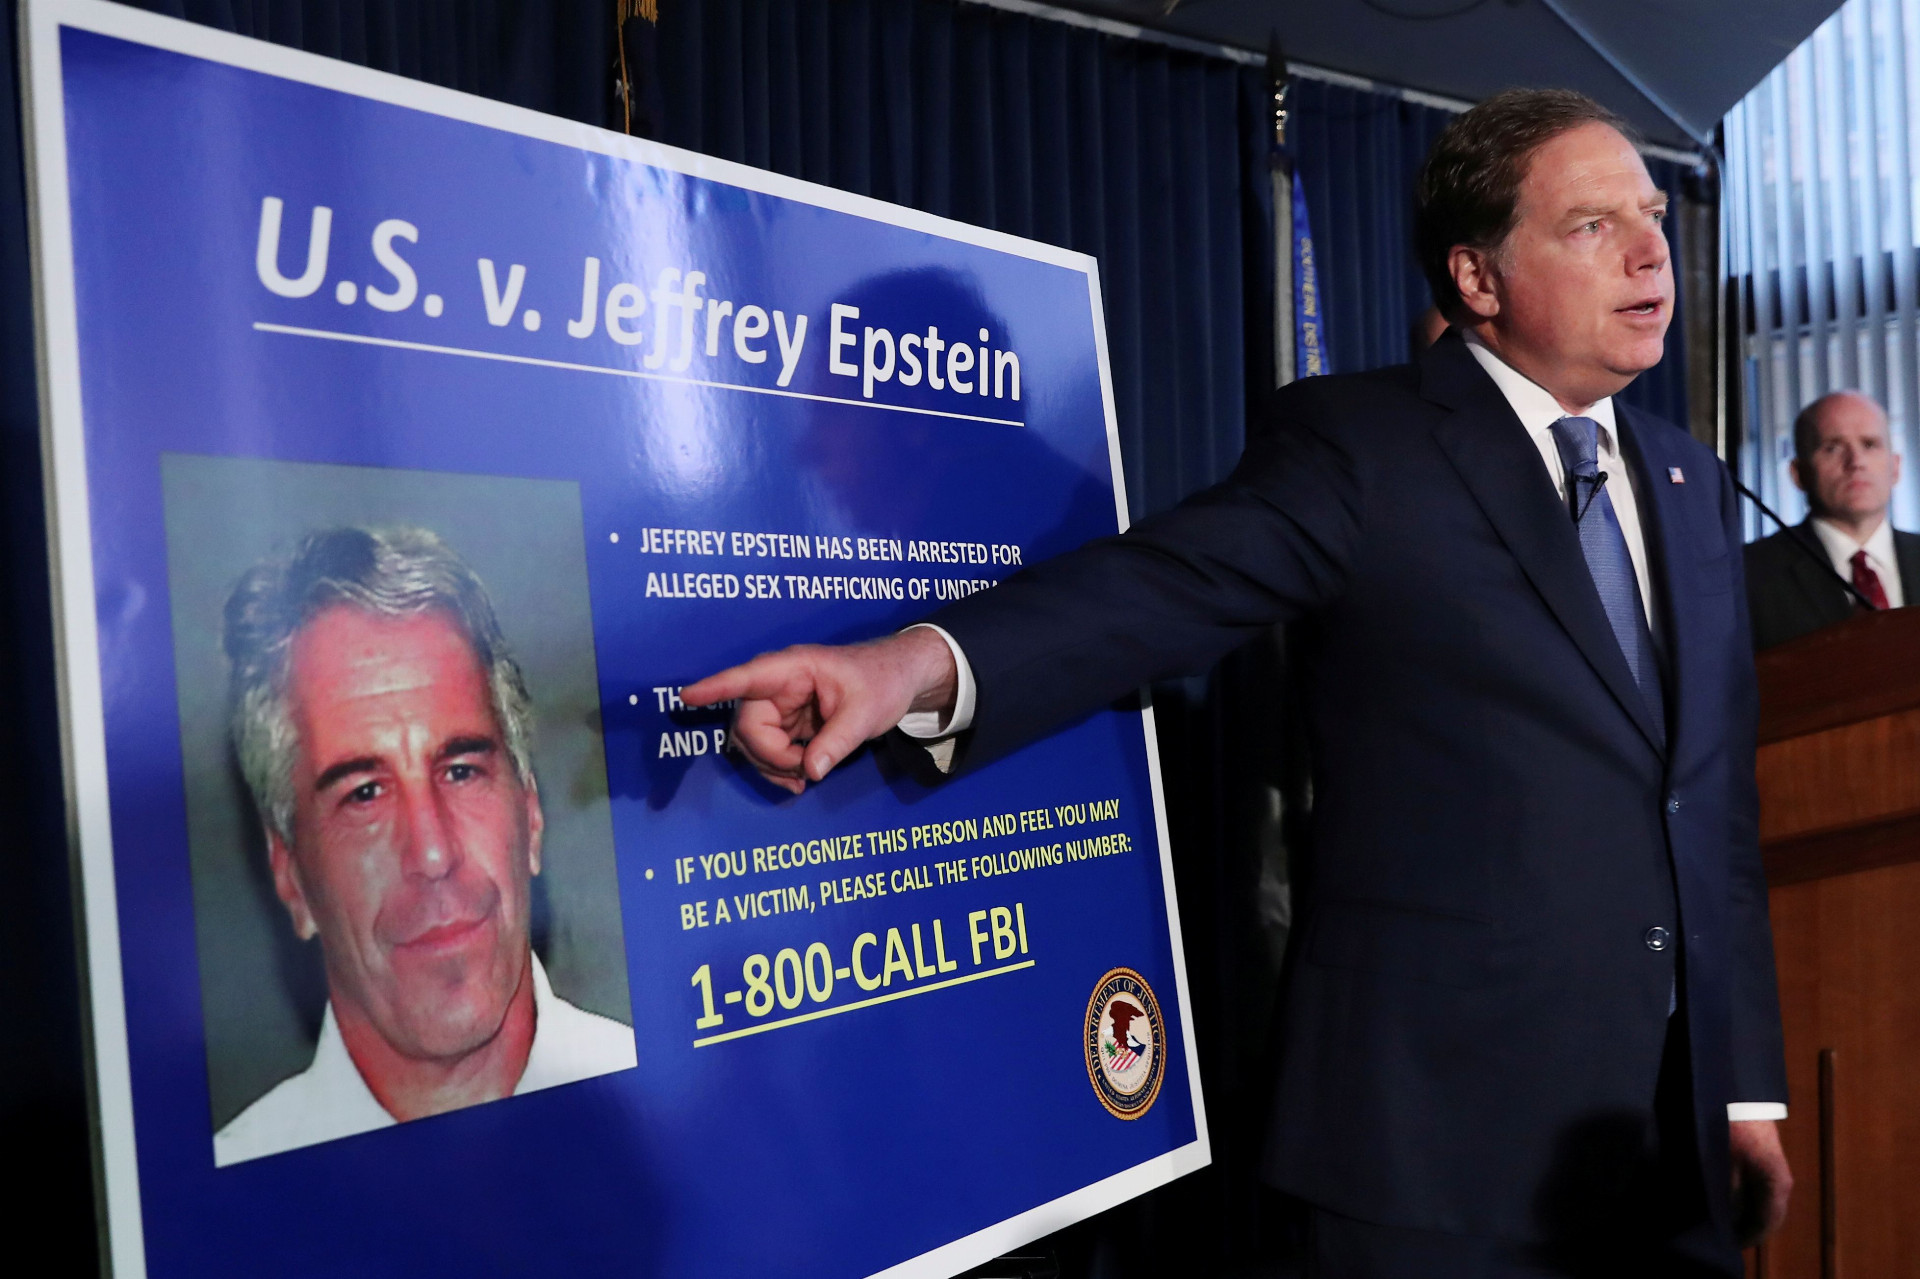 Prokurátor ukazuje podobizeň Jeffreyho Epsteina, ktorý je ústrednou postavou pedofilného škandálu, do ktorého majú byť zapletené americké elity.